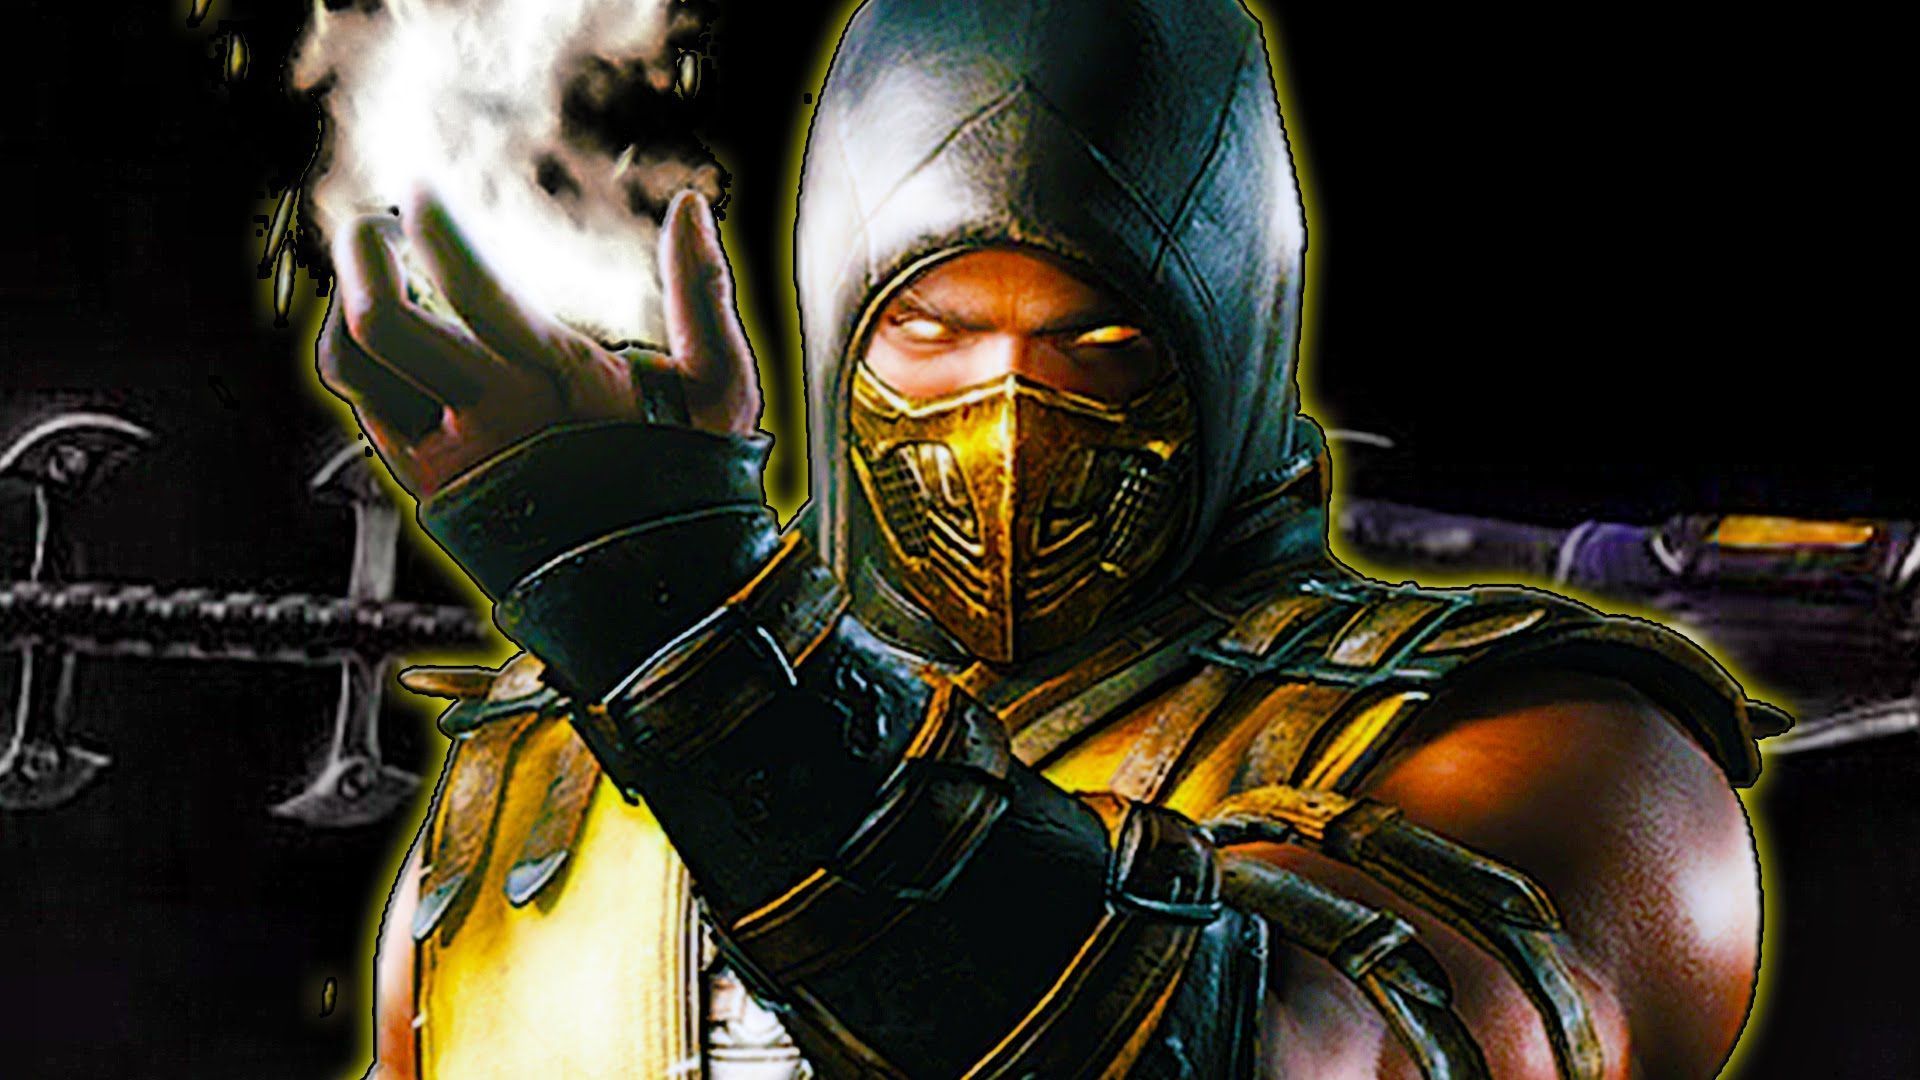 Mortal Kombat Scorpion Wallpaper Images #5pj1 » VaLvewz.com